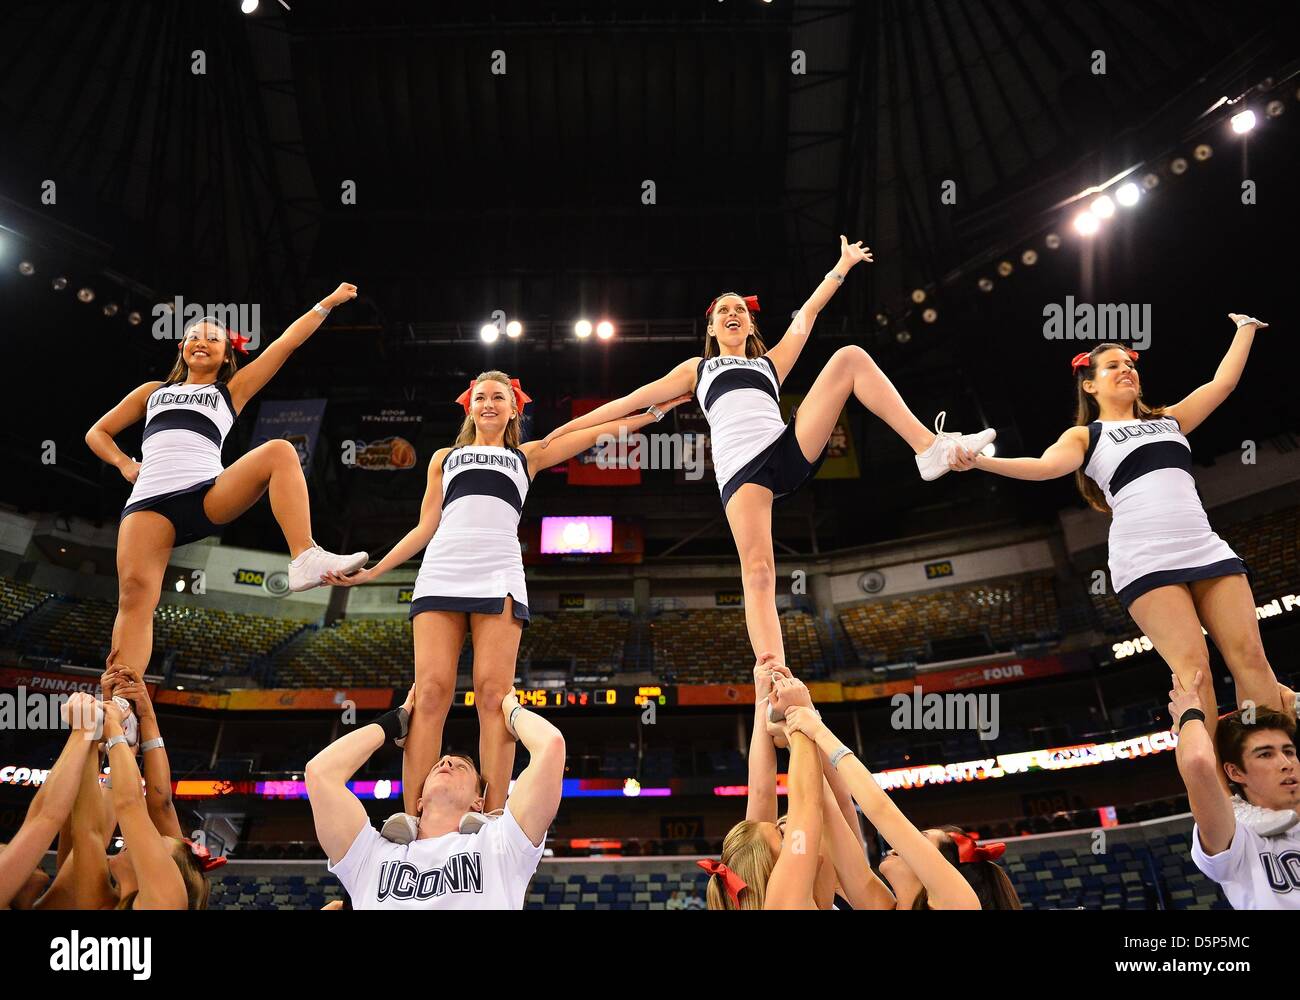 6 avril 2013 - New Orleans, LA, États-Unis - 06 avril 2013..Uconn cheerleader effectuer pour le public à la veille du final four basket-ball tournoi au New Orleans Arena à New Orleans, LA. Banque D'Images